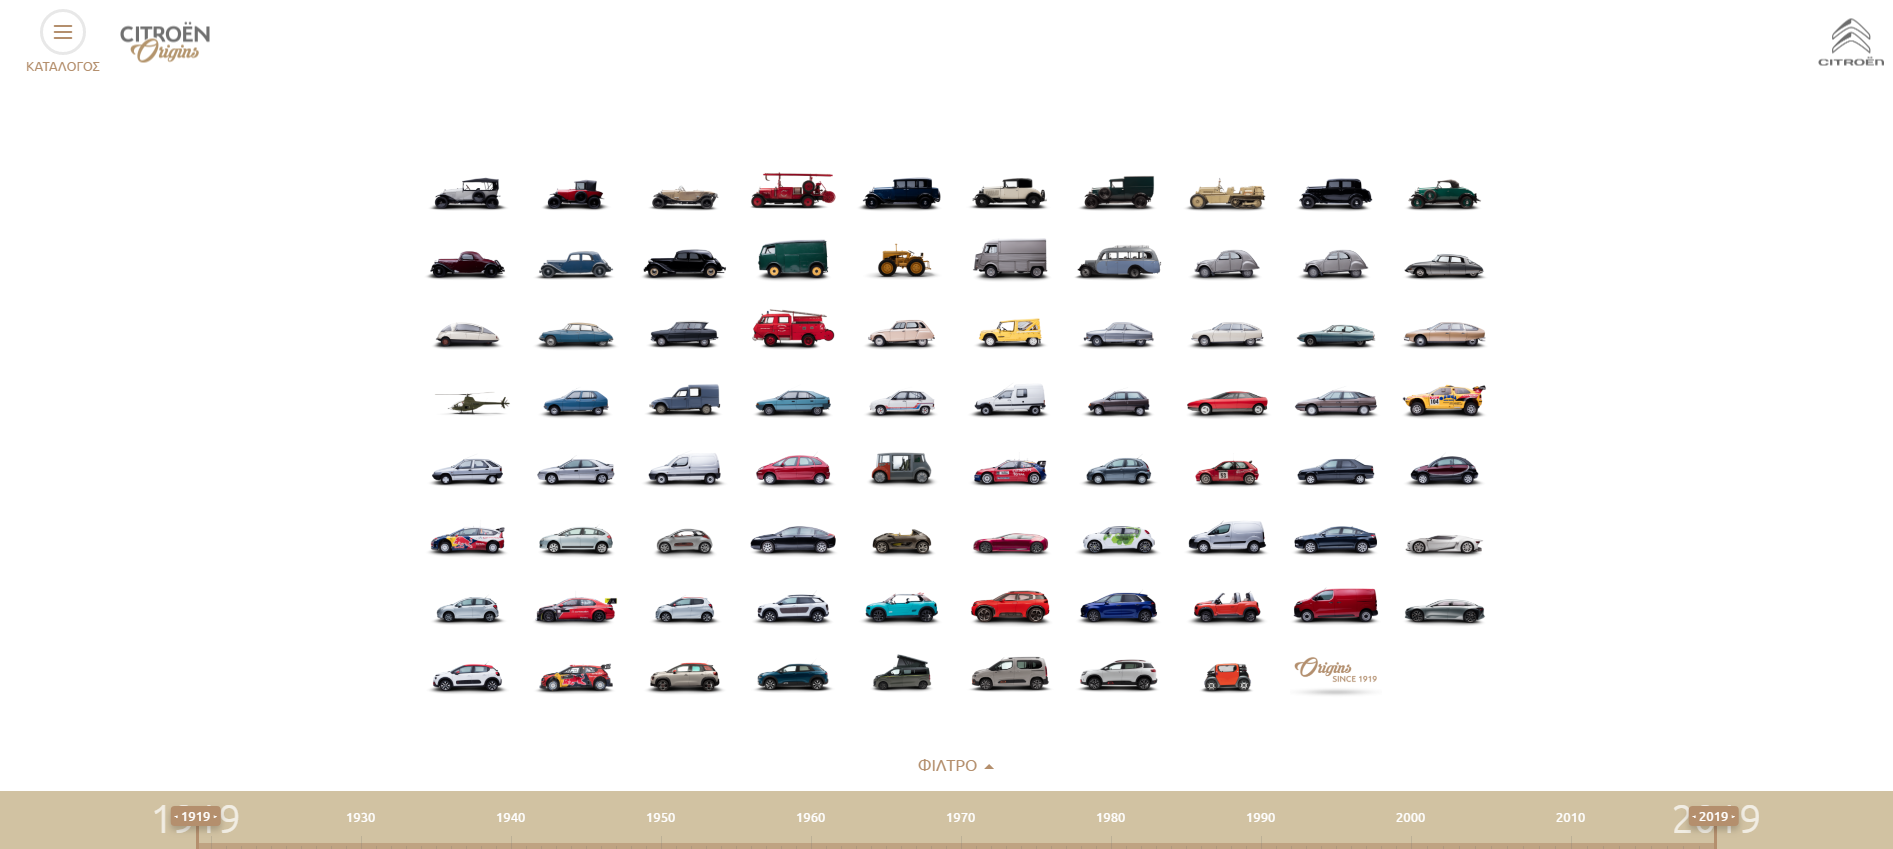 Επισκεφθείτε Online το πρώτο Μουσείο της Citroën!